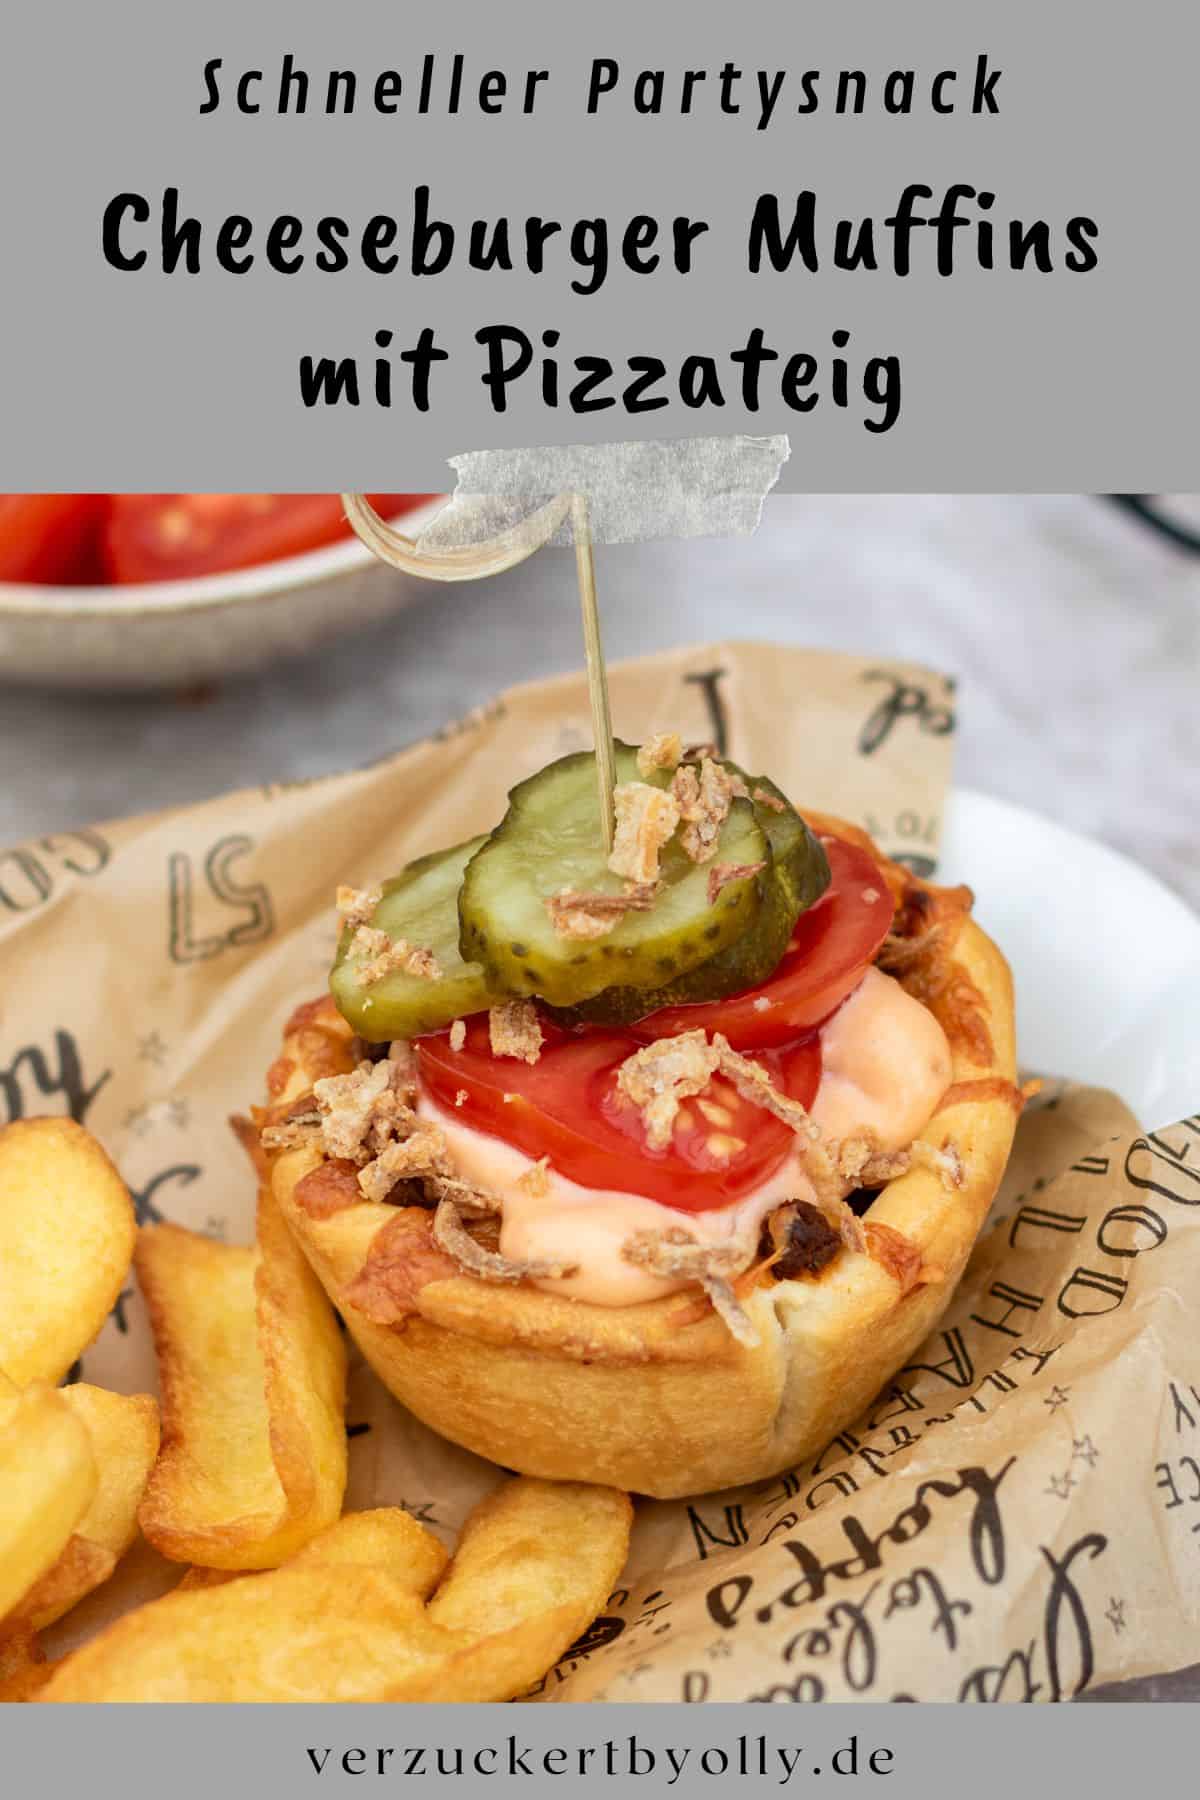 Pin zu Pinterest: Cheeseburger Muffins - schnelles Party-Fingerfood mit Pizzateig aus dem Kühlregal